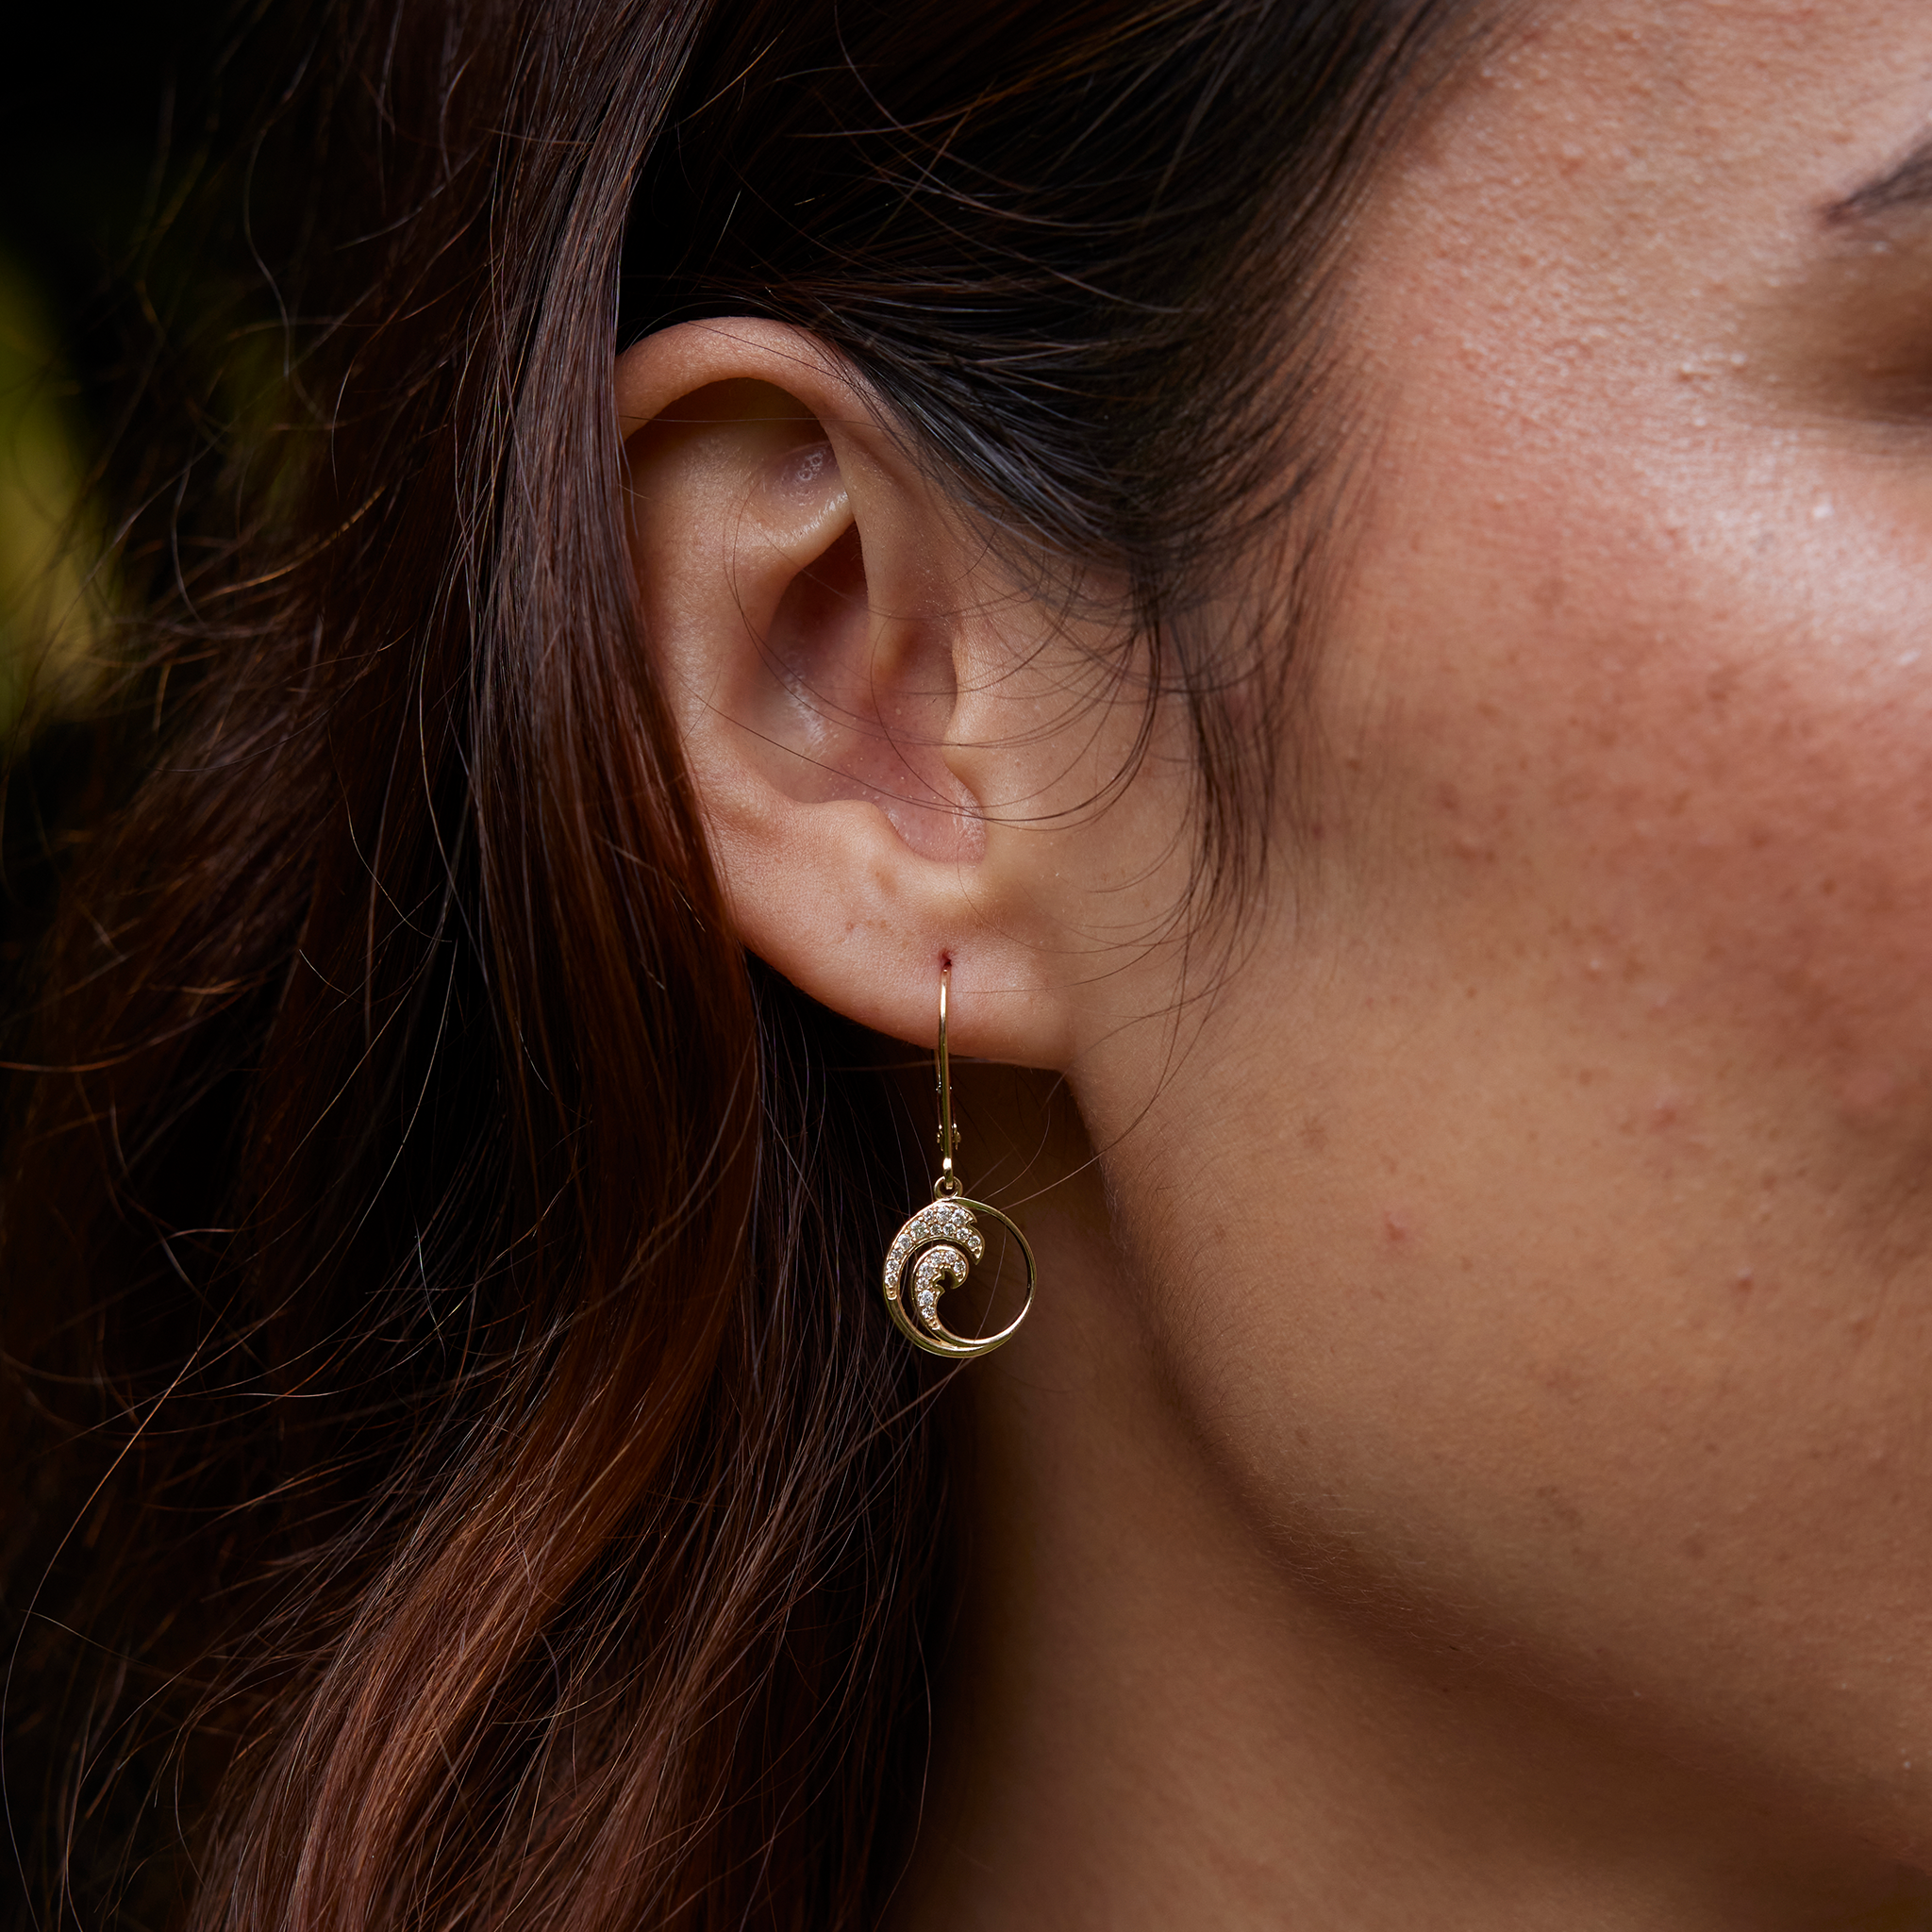 Nalu Earrings in Gold with Diamonds - 12mm